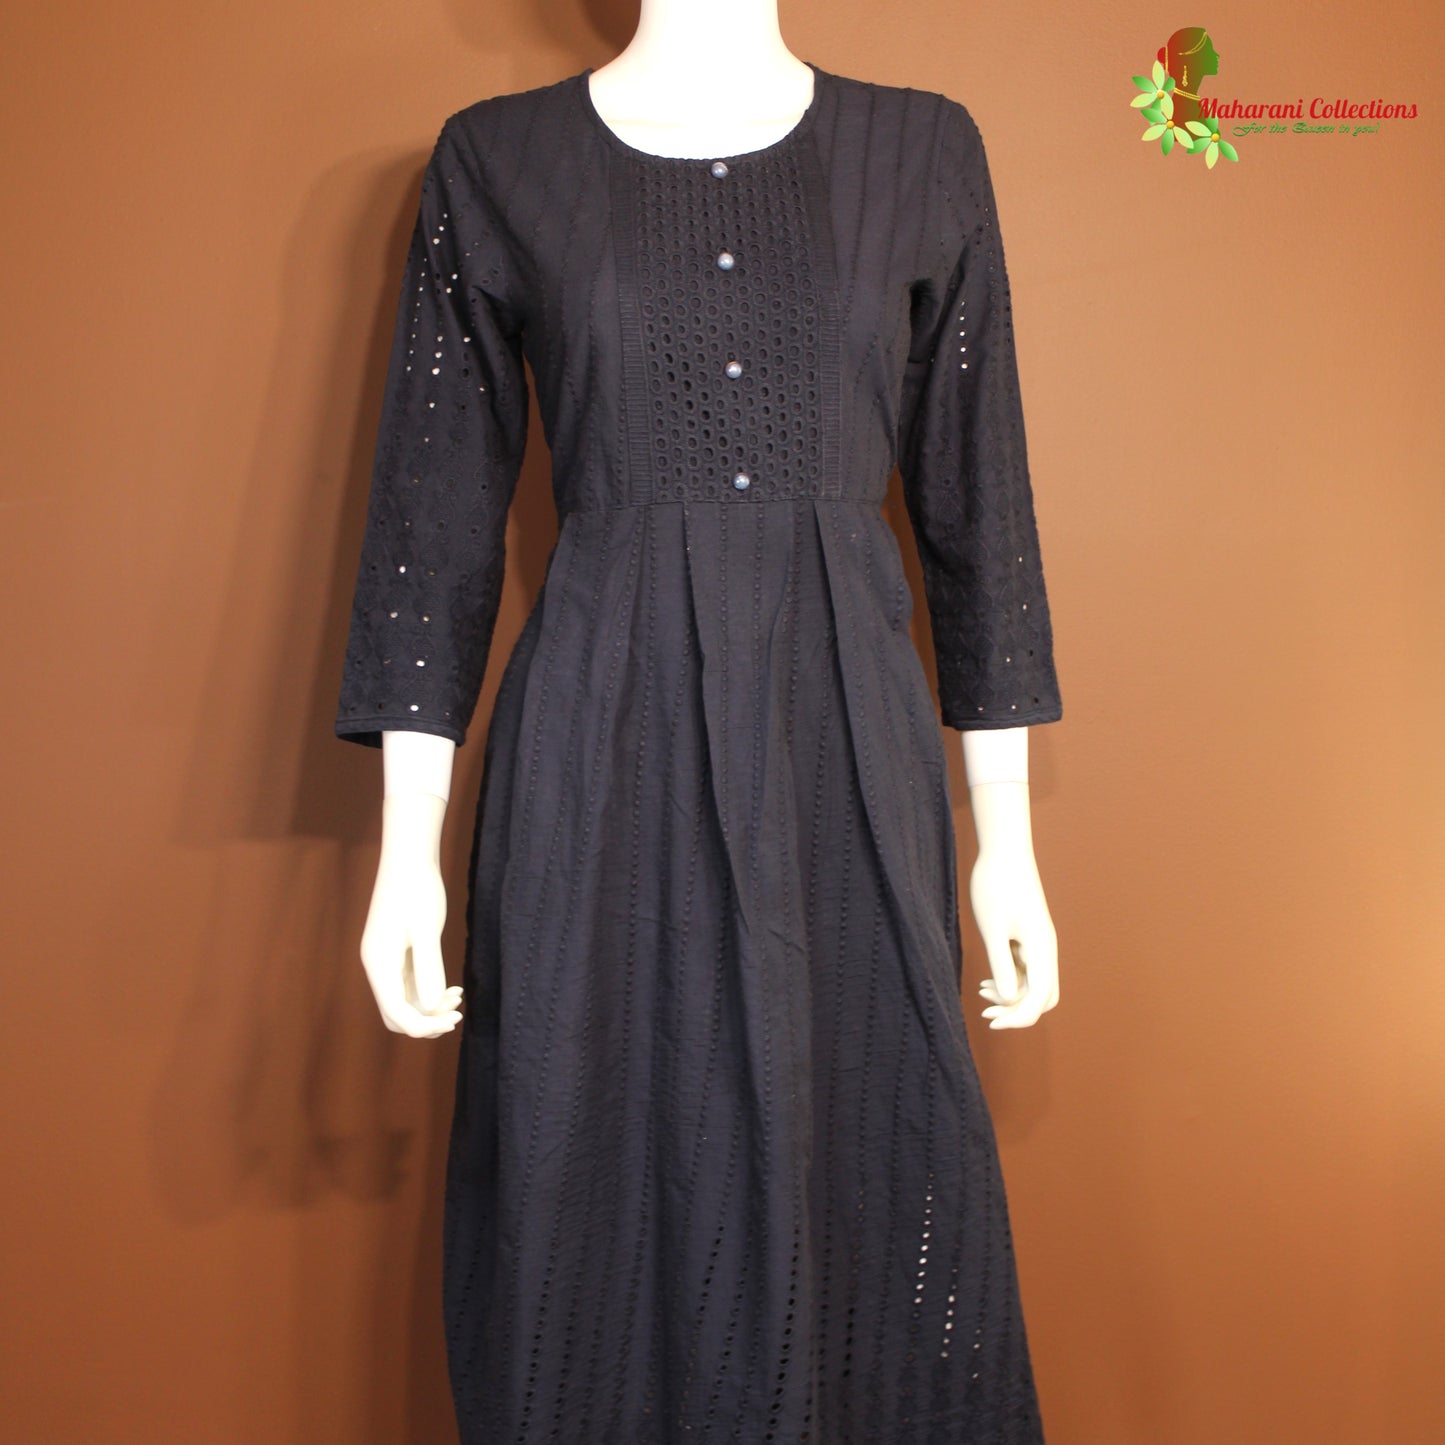 Maharani's Long Dress - Pure Cotton - Black (M)